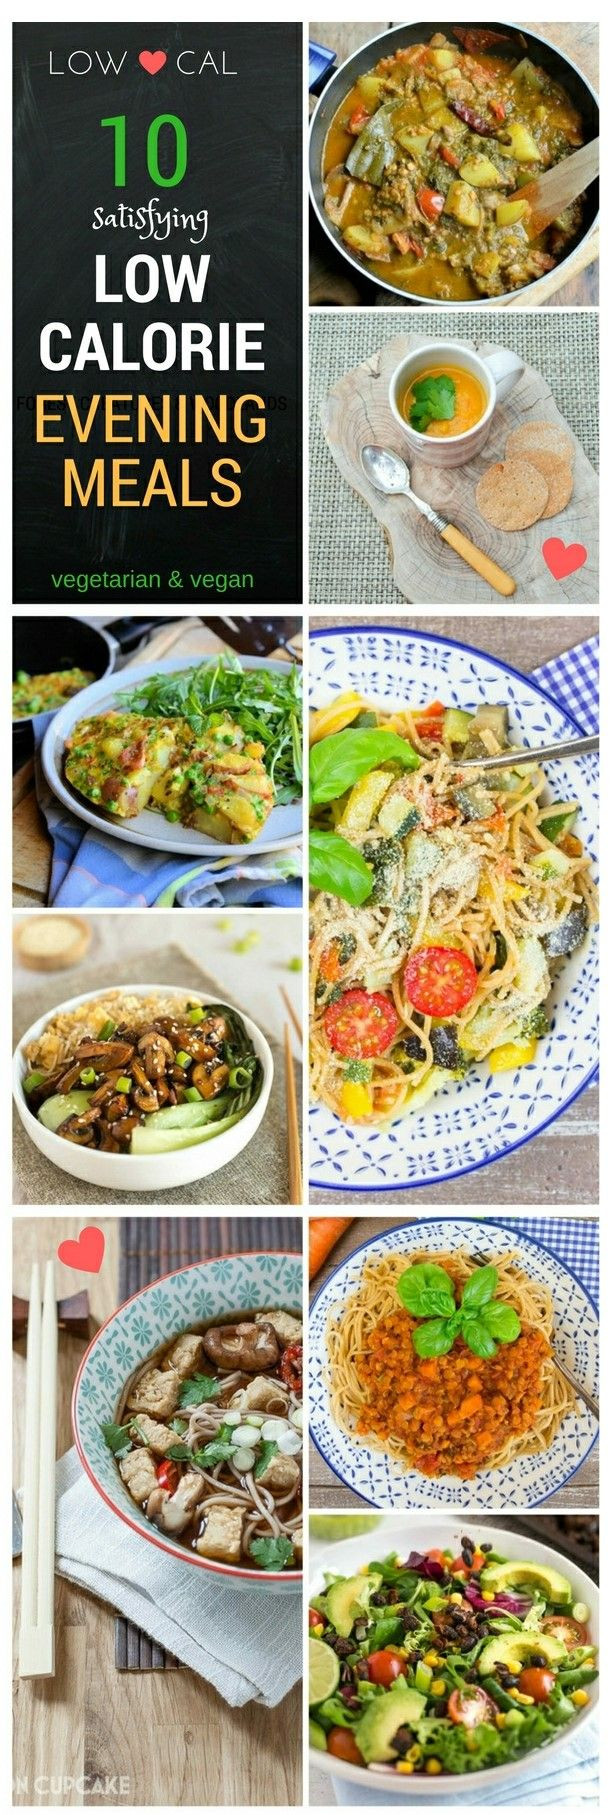 Vegetarian Recipes Low Calorie
 25 best ideas about Low calorie vegan on Pinterest